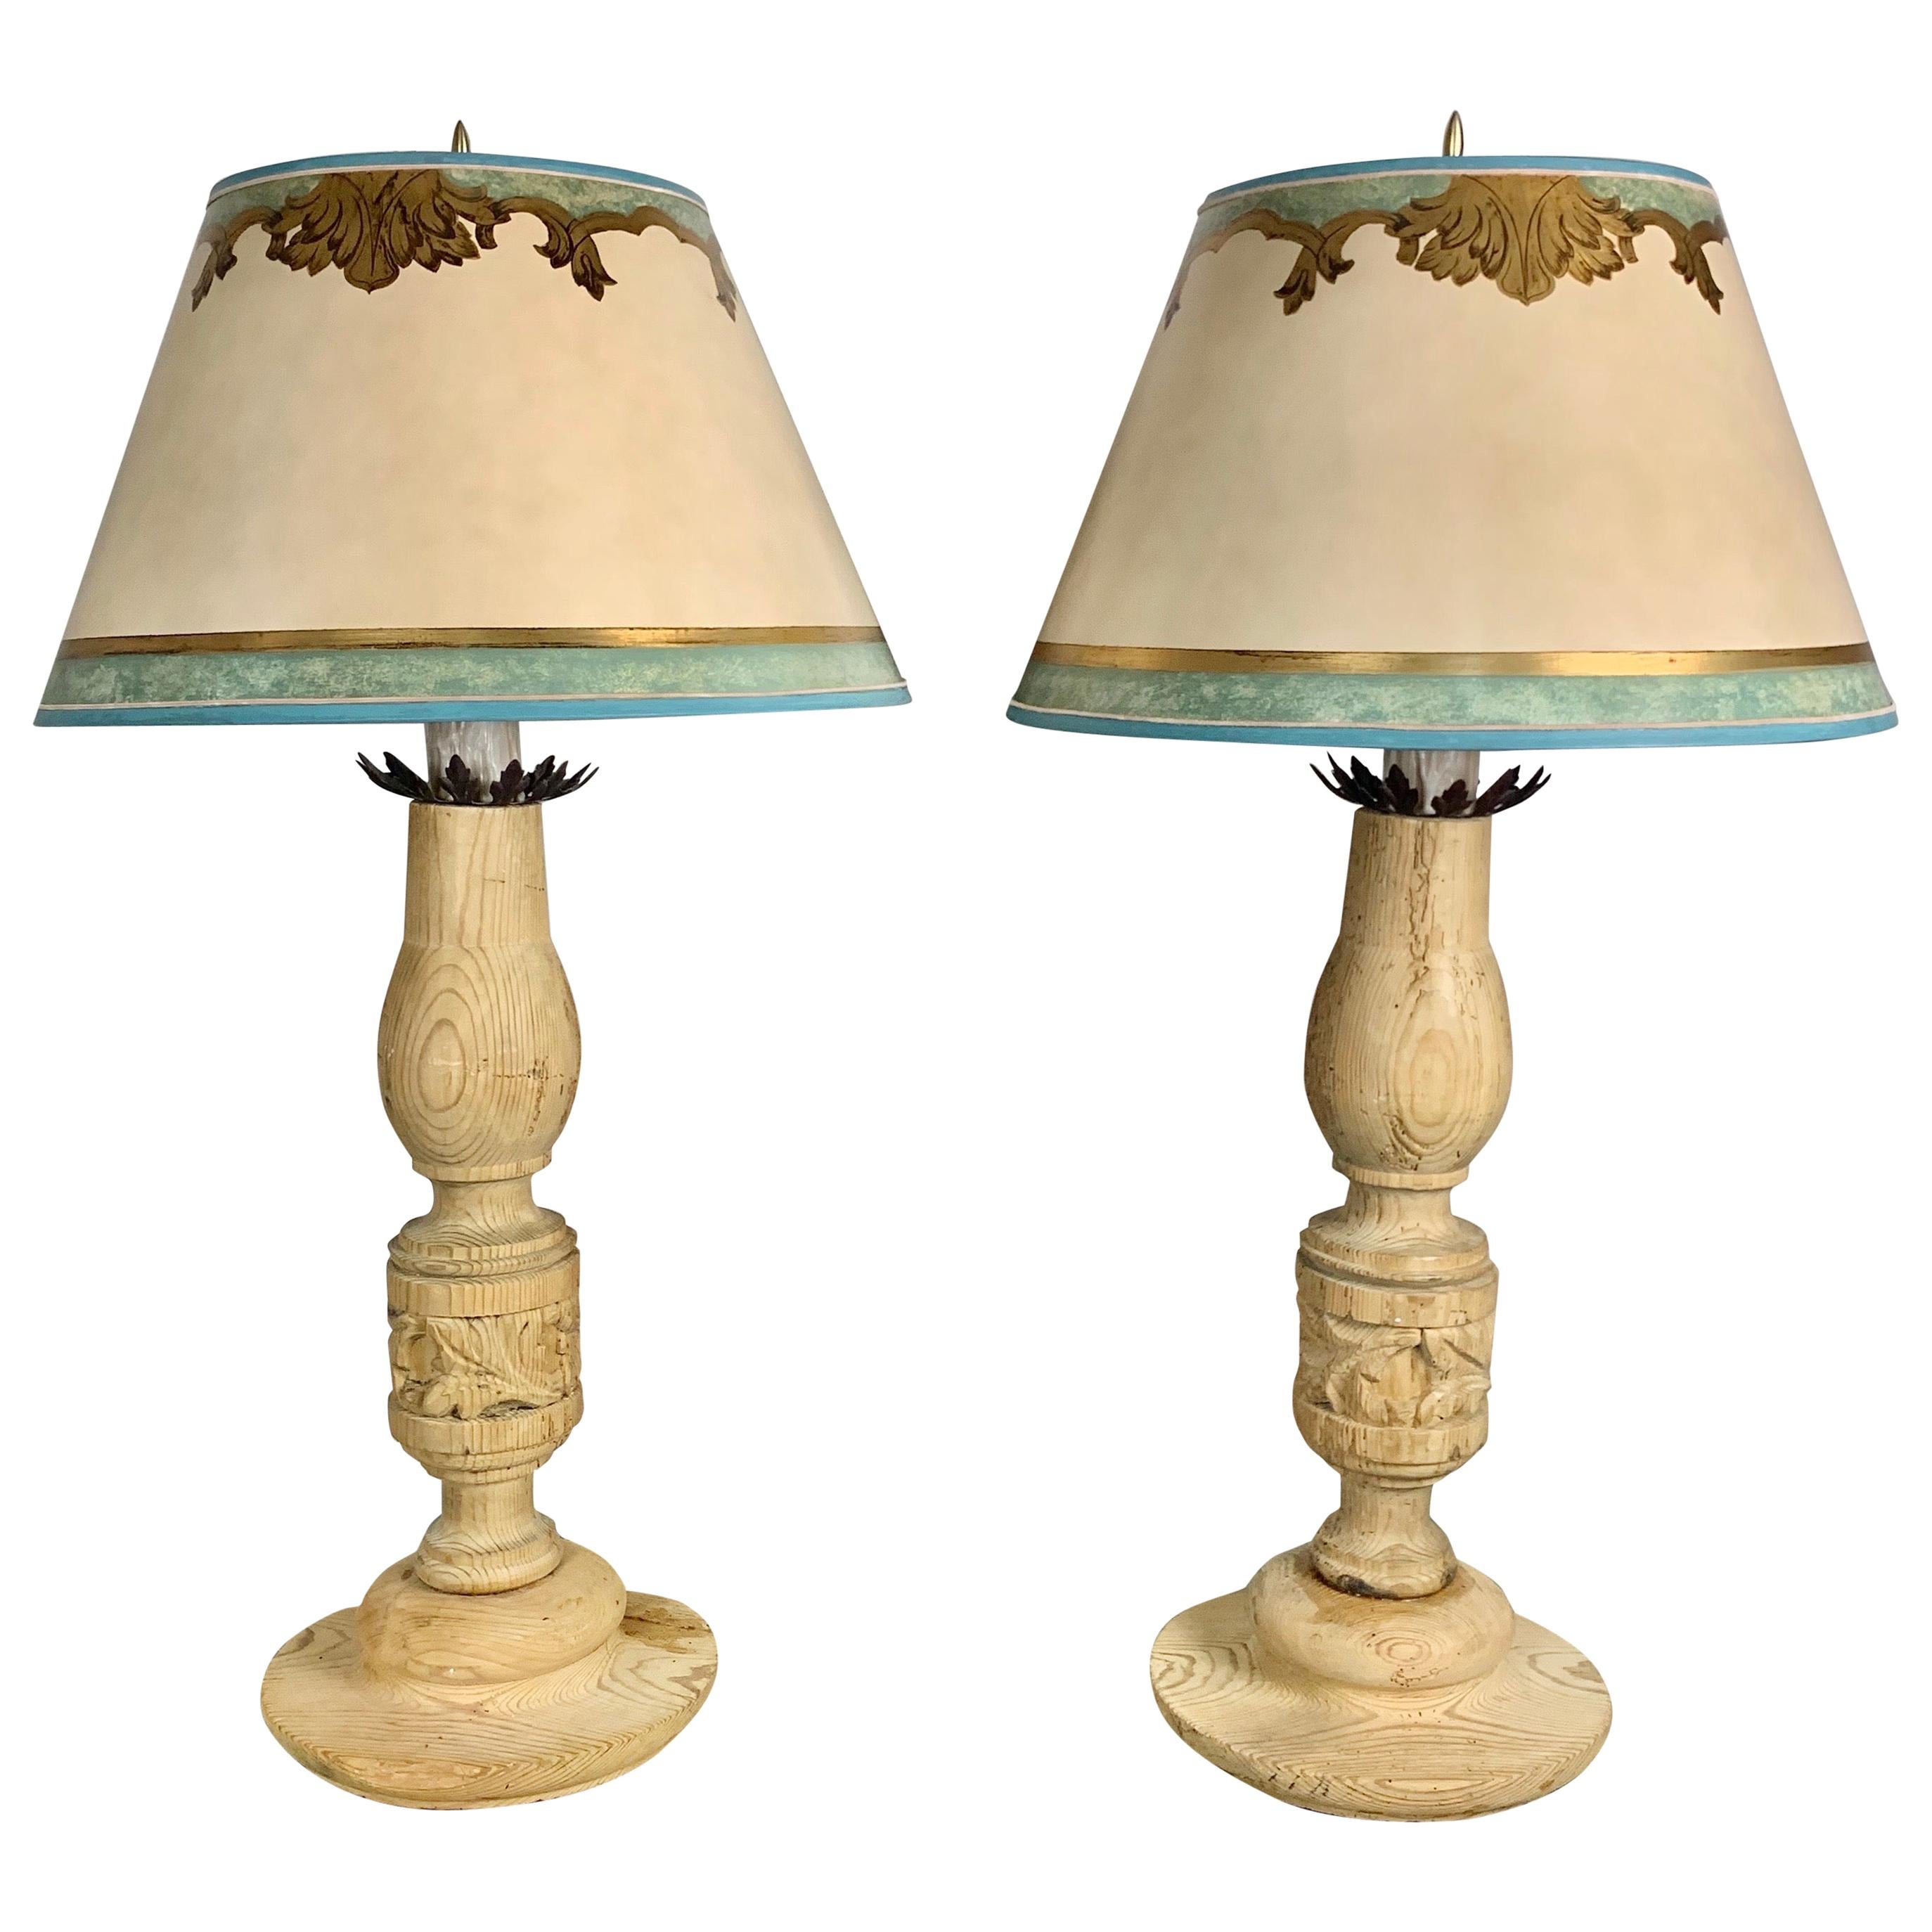 Paire de chandeliers italiens du XIXe siècle avec abat-jours en parchemin sur mesure